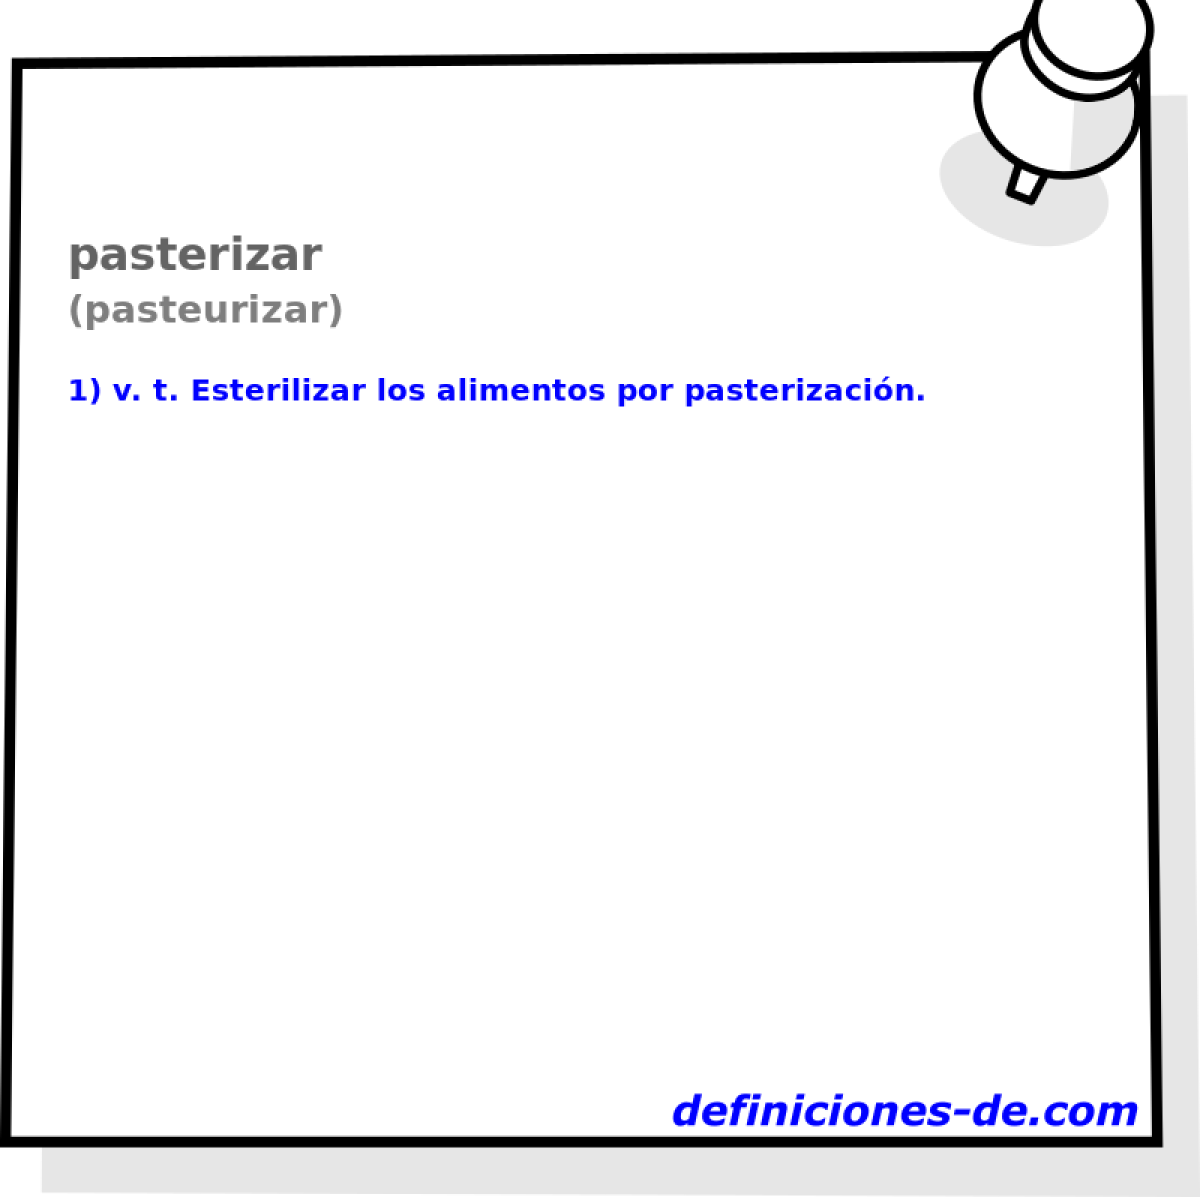 pasterizar (pasteurizar)